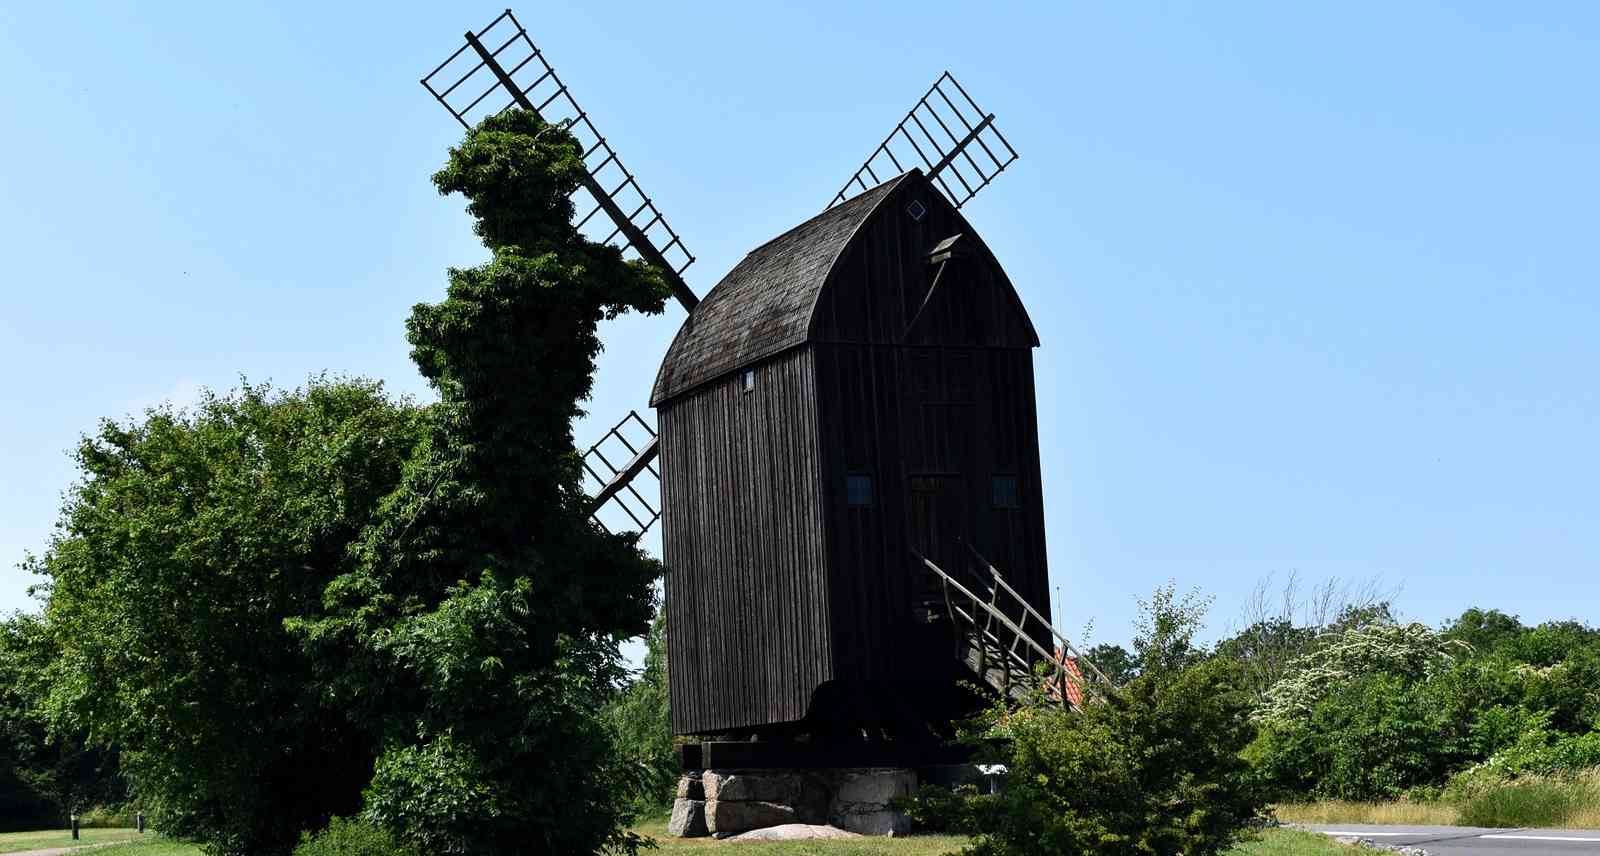 Bechs Mølle: The Oldest Windmill in Denmark, Bornholm